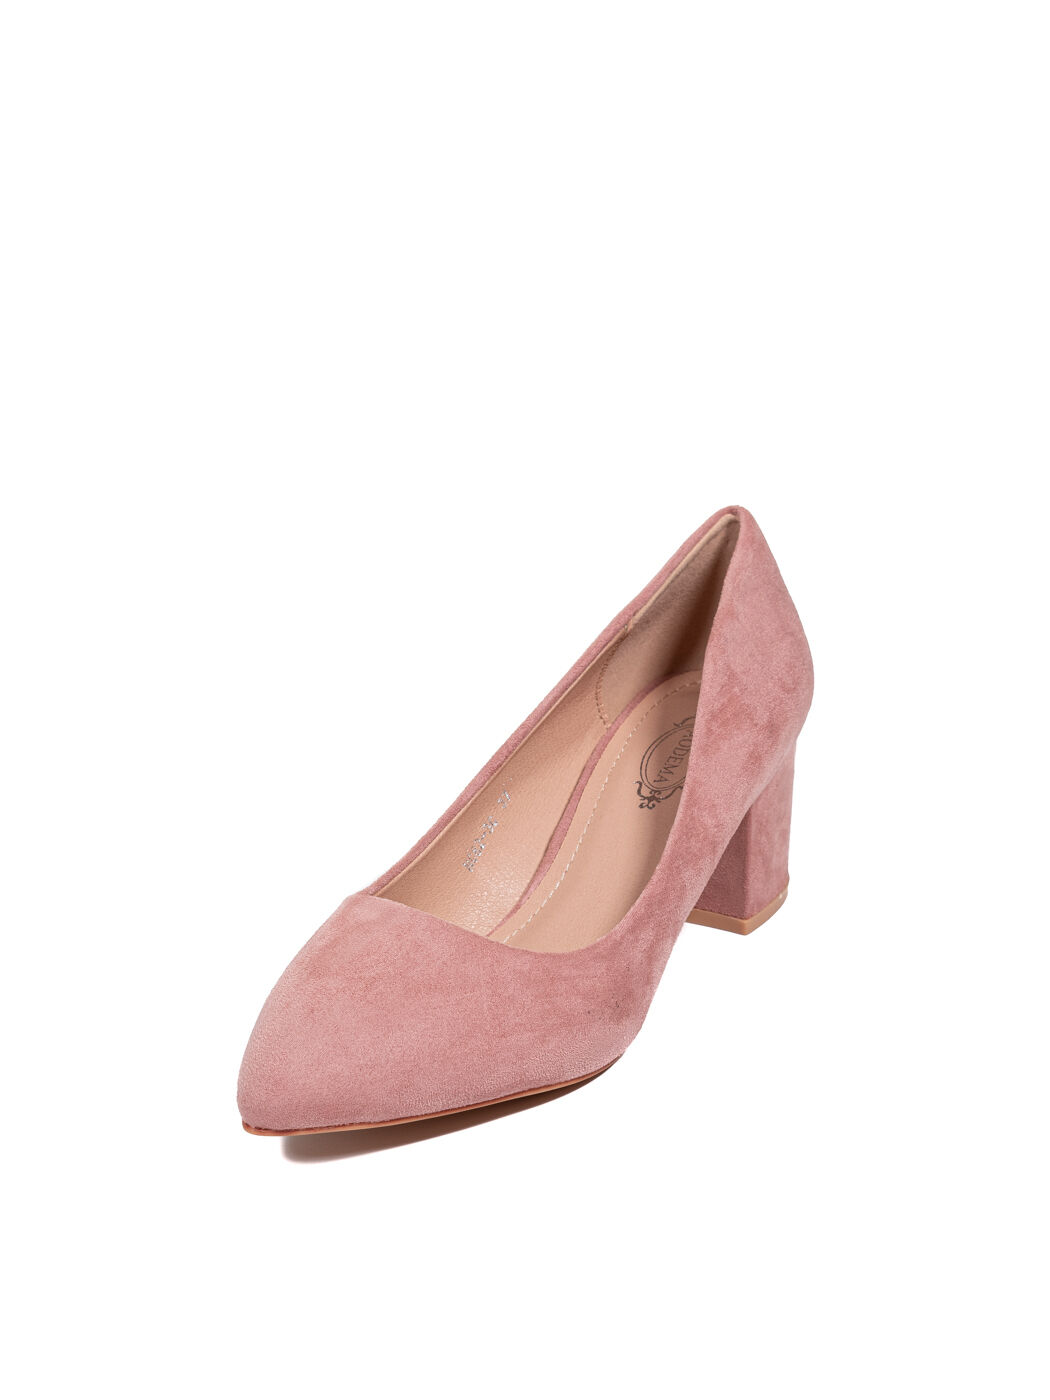 Туфли женские розовые экозамша каблук устойчивый демисезон от производителя CM вид 0